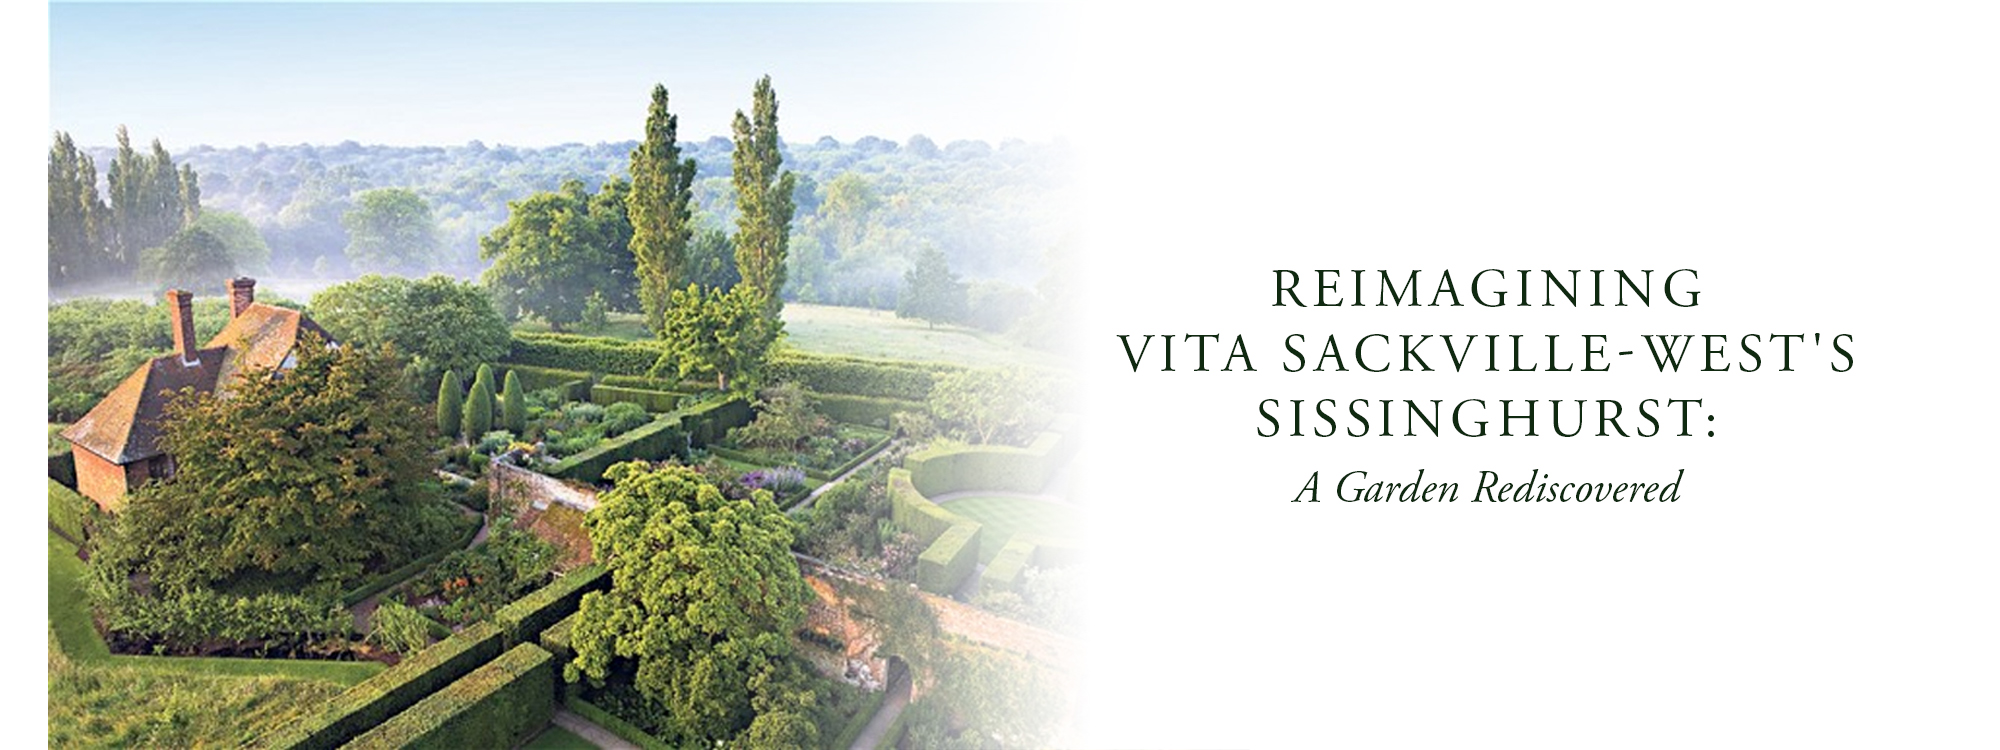 Reimagining Vita Sackville-West's Sissinghurst: A Garden Rediscovered